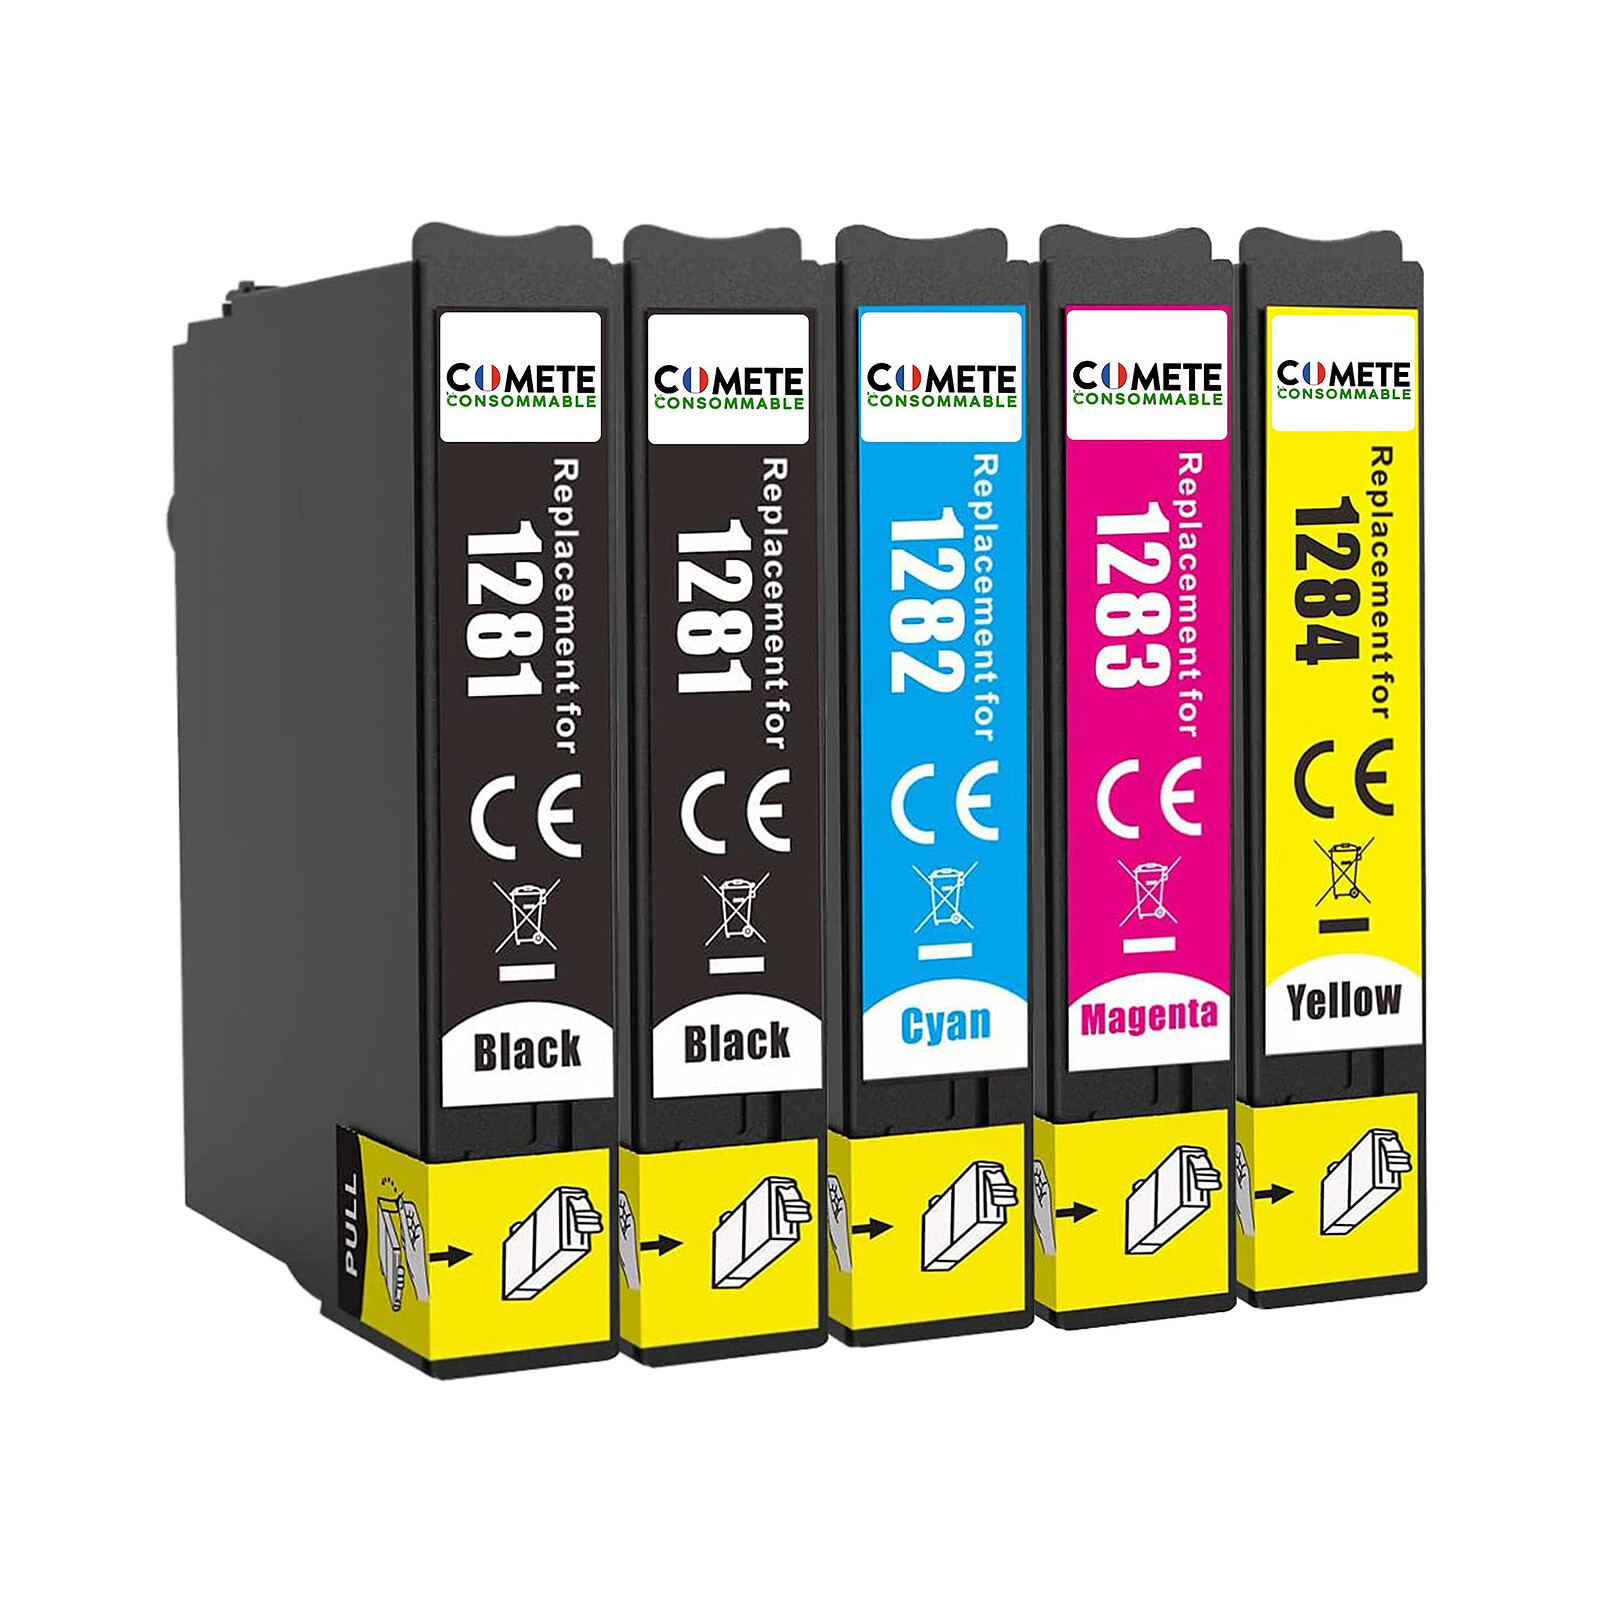 COMETE - 953XL - 5 Cartouches compatibles HP 953 XL 953XL - Noir et Couleur  - Marque française - Cartouche imprimante - LDLC